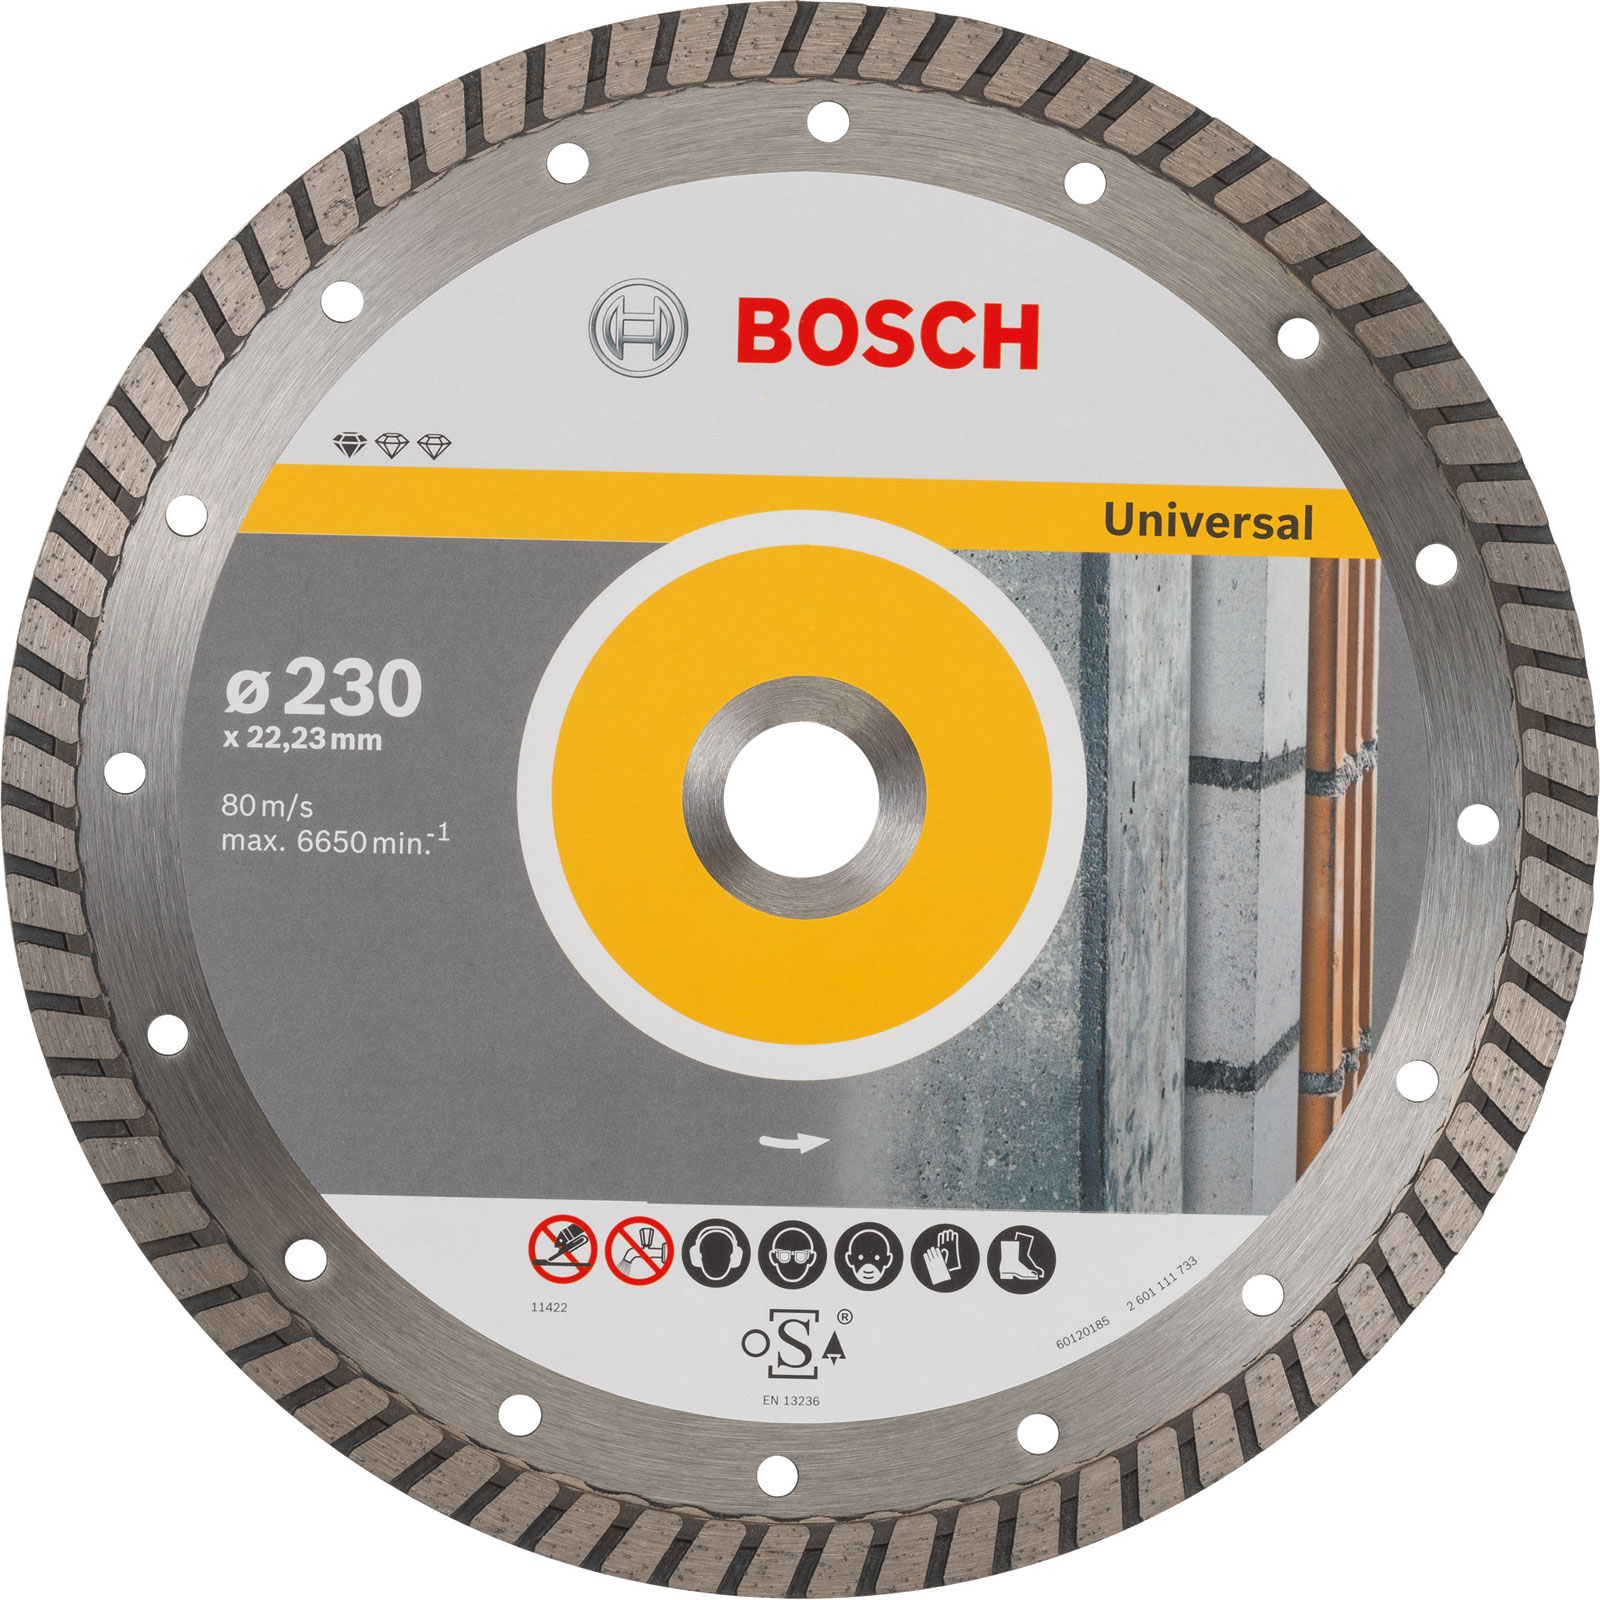 Photos - Cutting Disc Bosch Standard Universal Cutting Diamond Disc 230mm 2608602397 